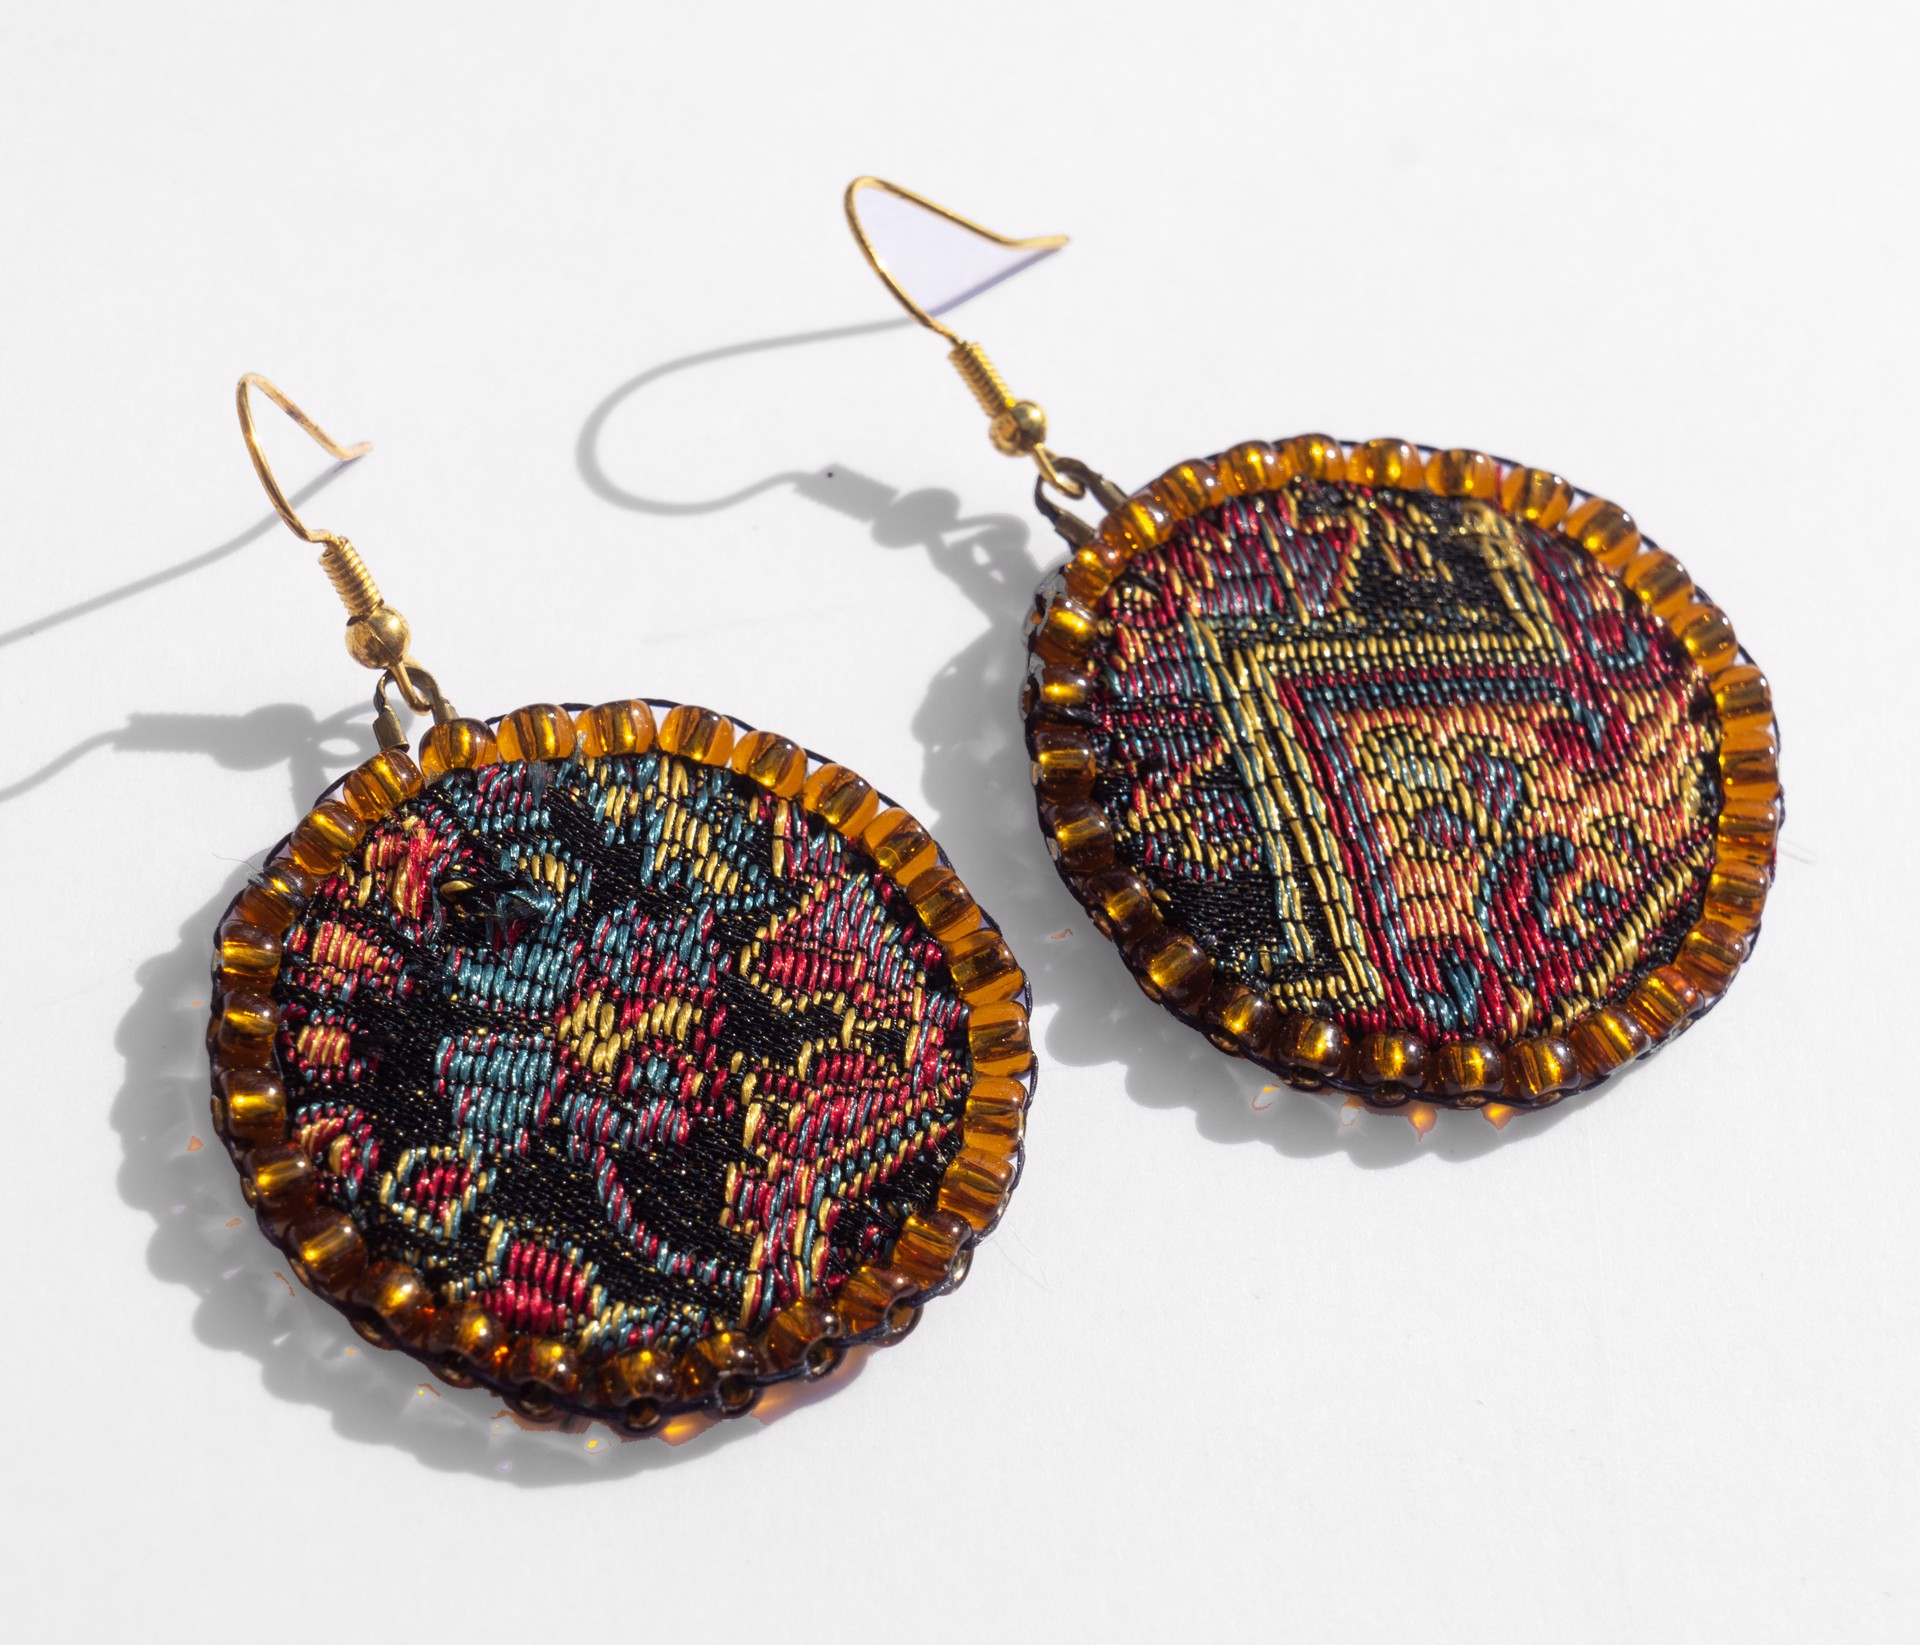 Tapestry earrings by Hattie Lee Mendoza